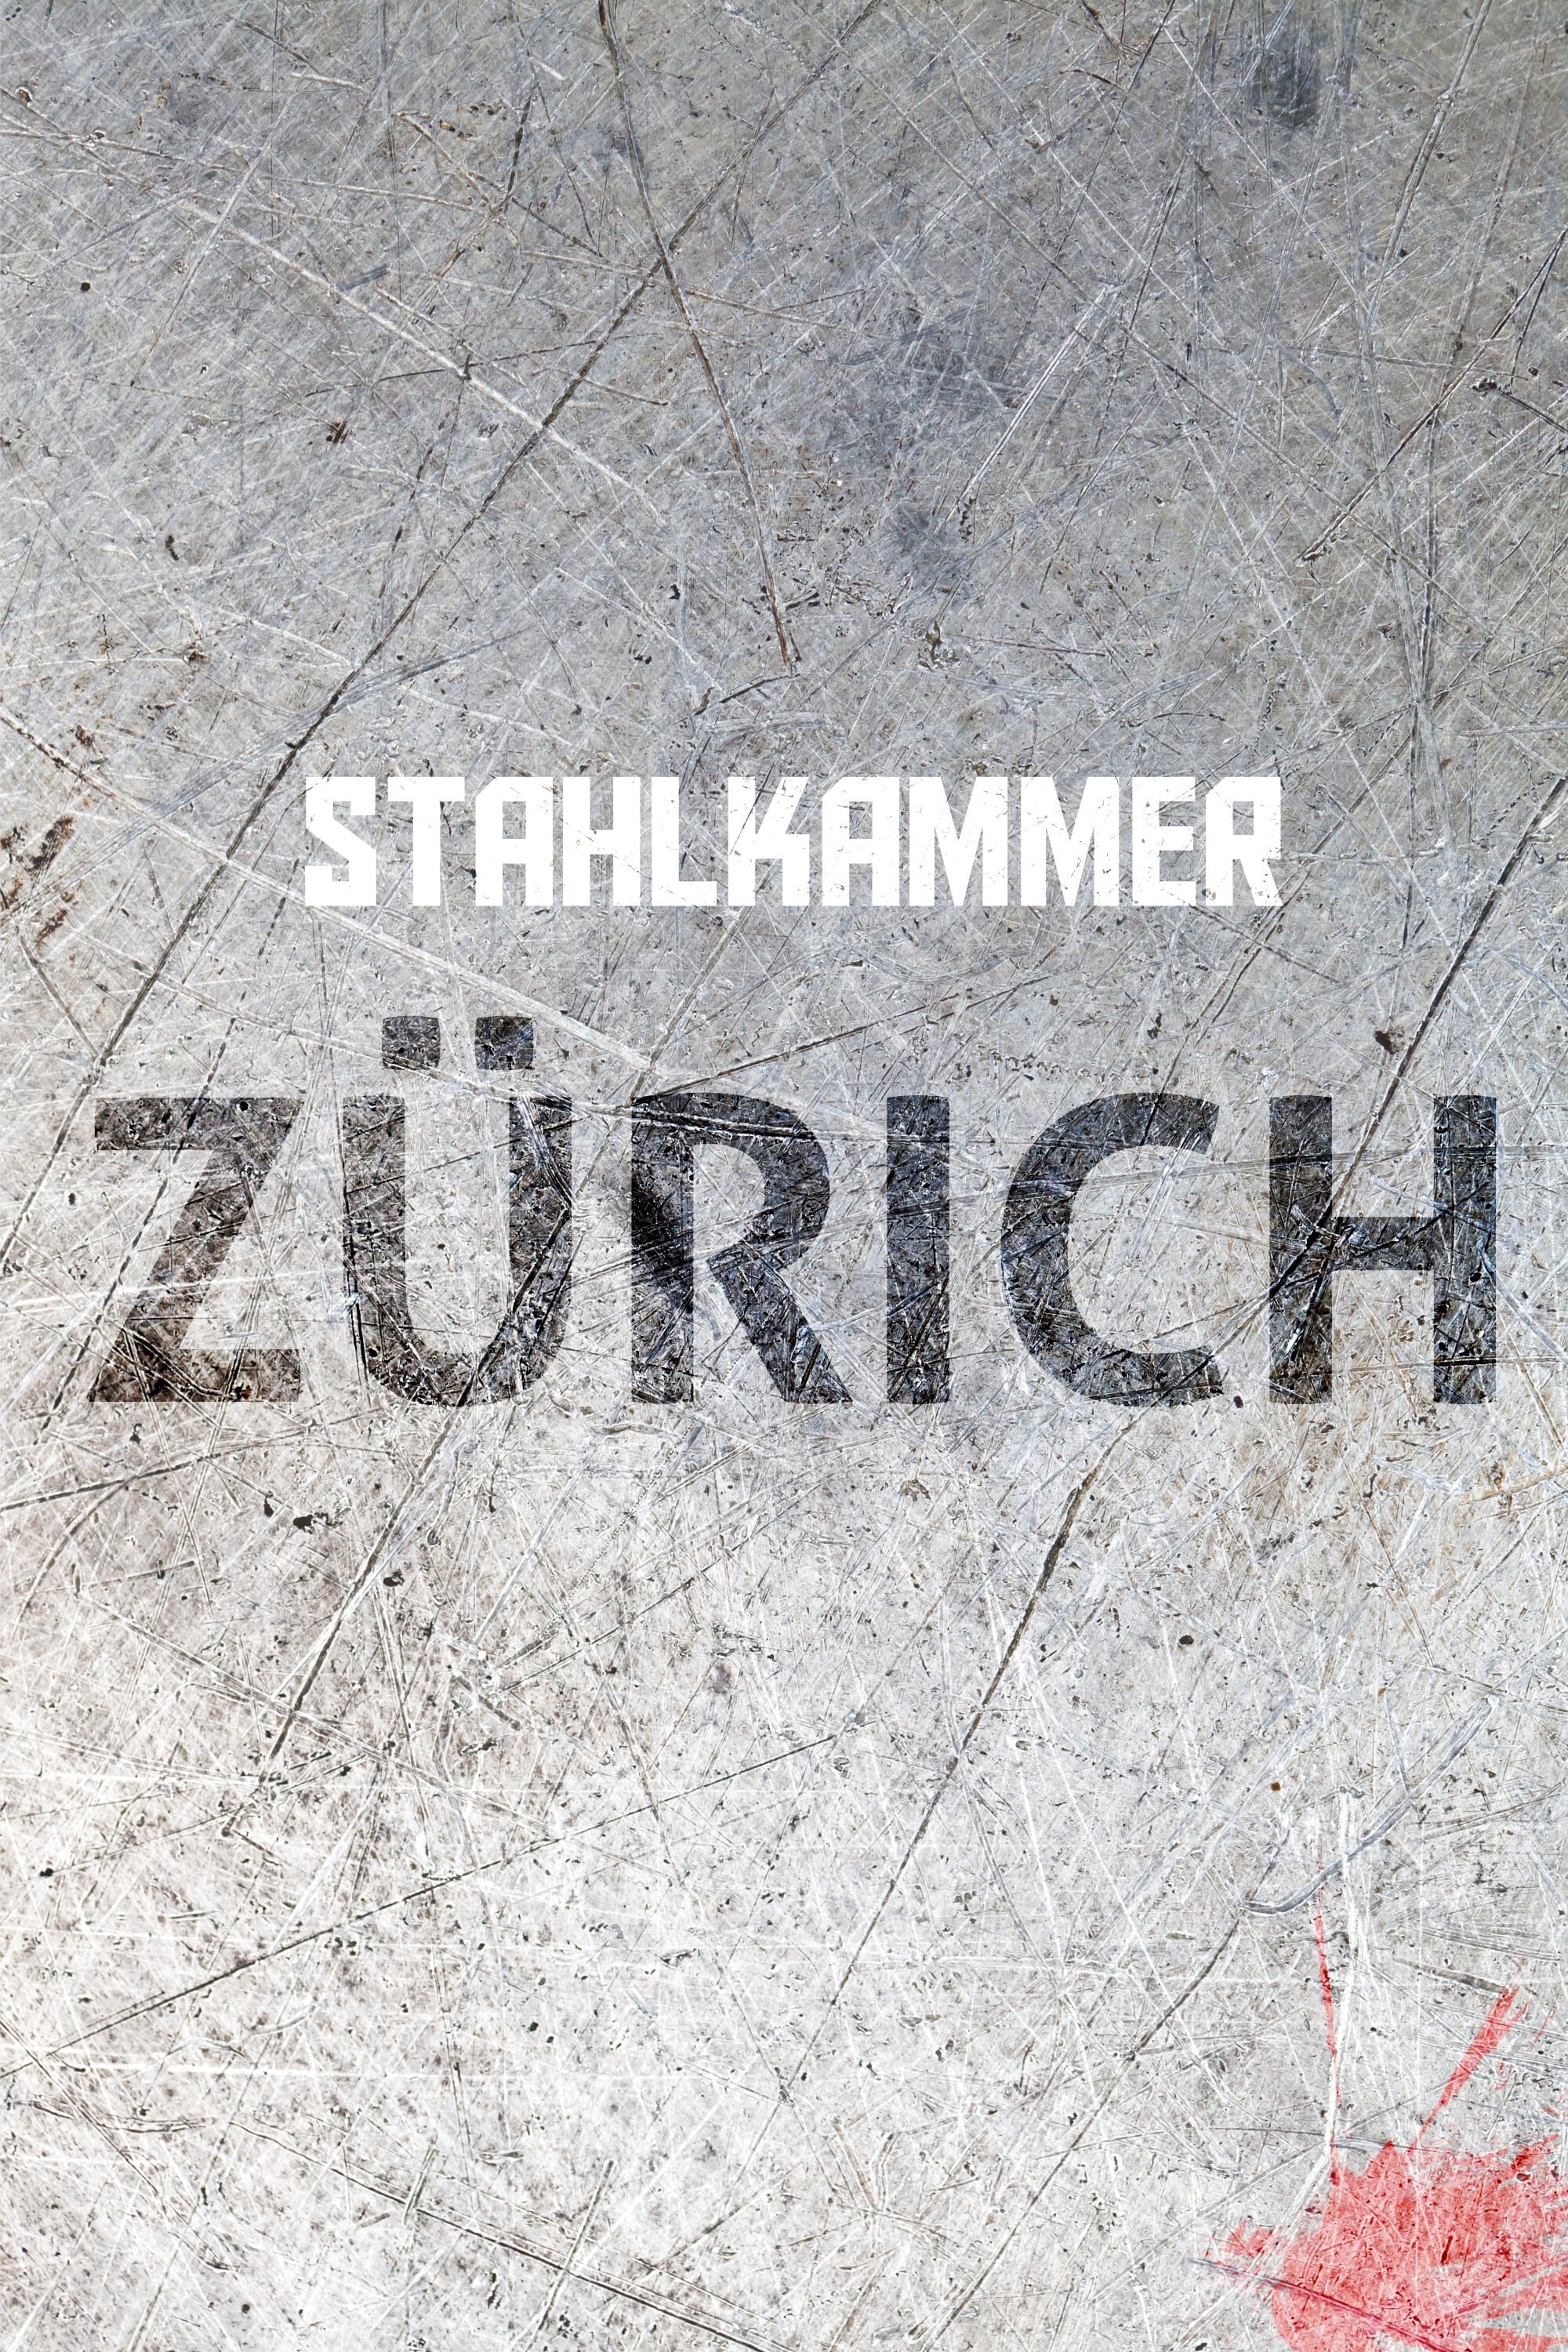 Stahlkammer Zürich TV Shows About Switzerland